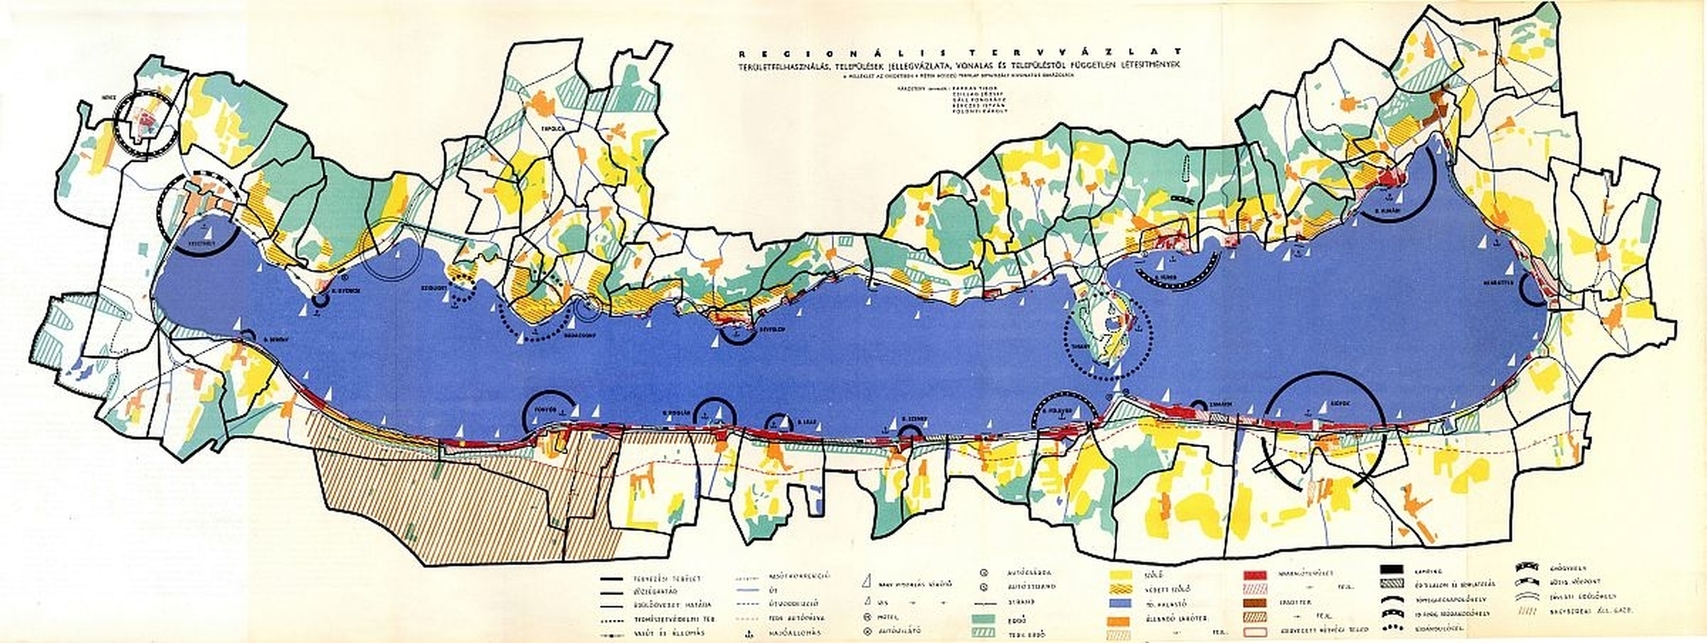 A Balaton-környék Regionális Terve, 1958. Forrás: Magyar Építőművészet 1958/4-5